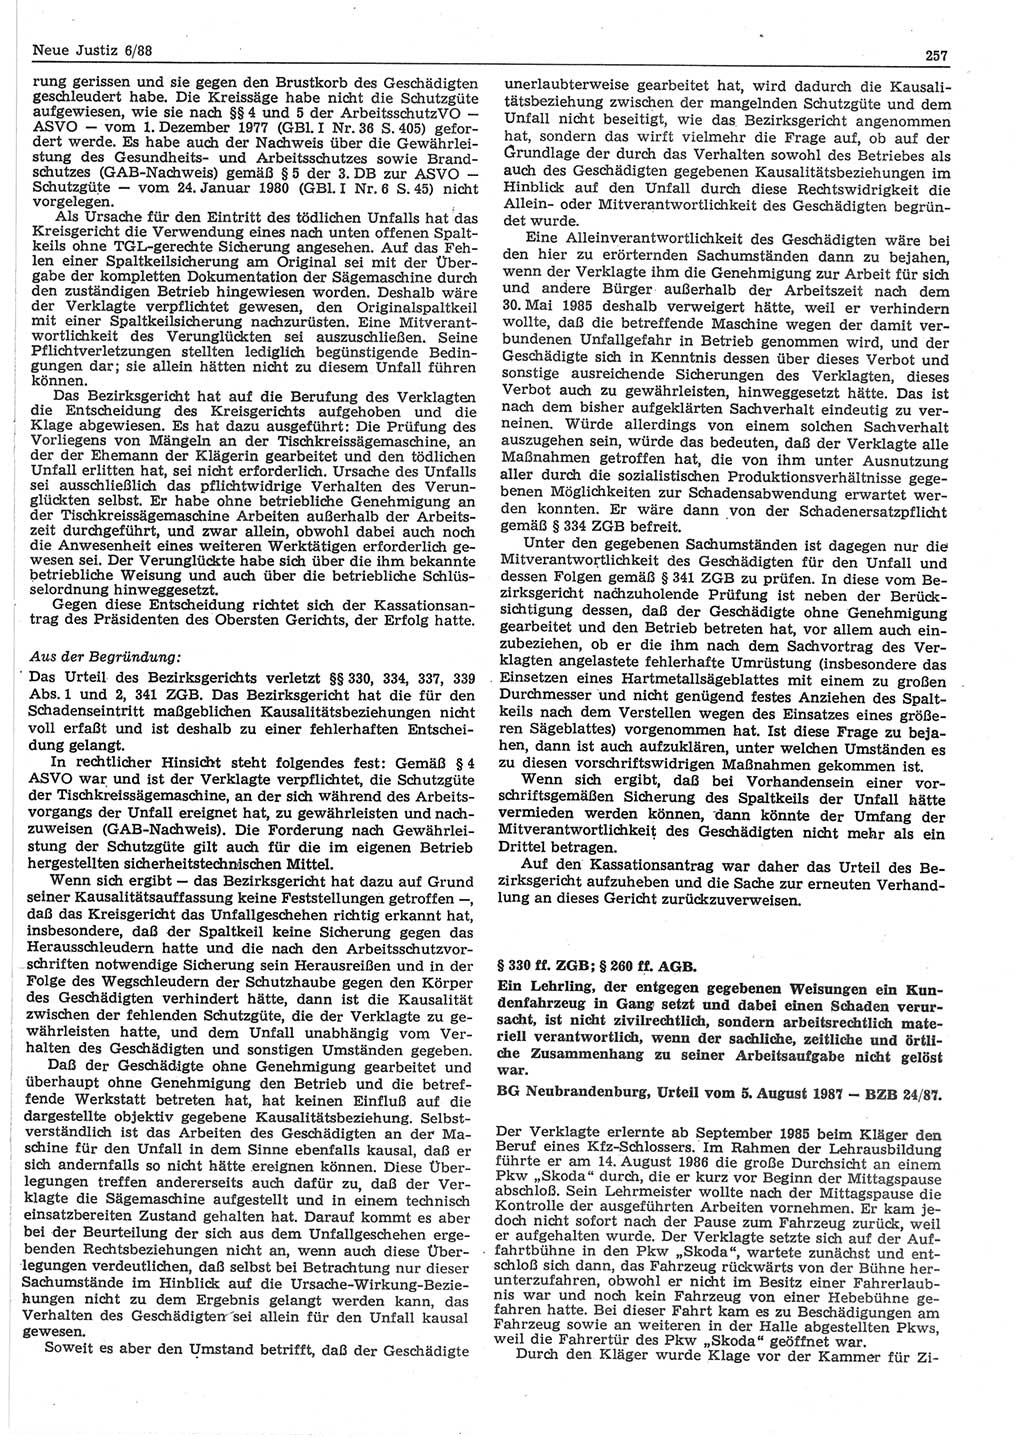 Neue Justiz (NJ), Zeitschrift für sozialistisches Recht und Gesetzlichkeit [Deutsche Demokratische Republik (DDR)], 42. Jahrgang 1988, Seite 257 (NJ DDR 1988, S. 257)